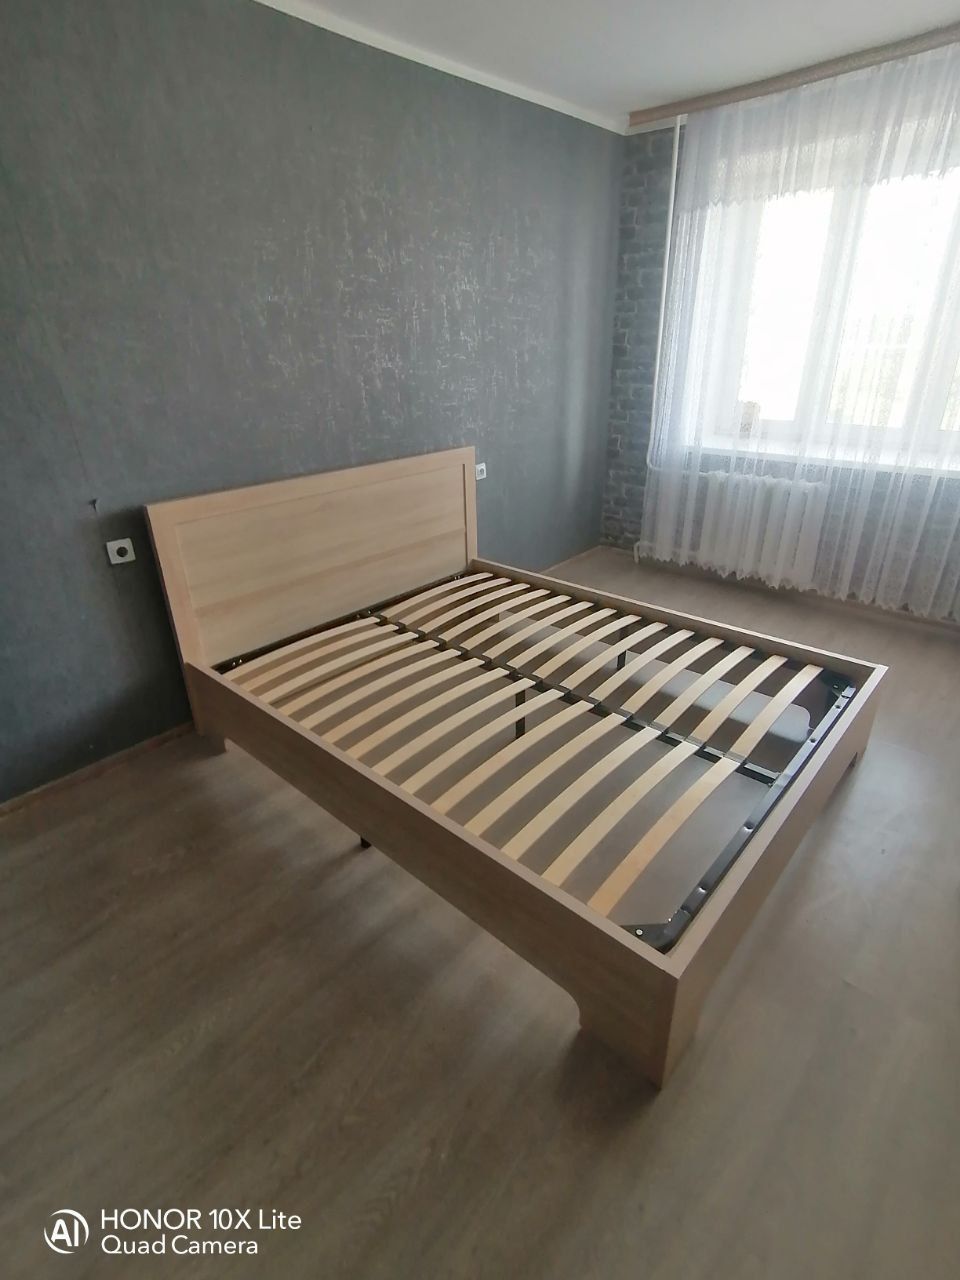 Полутораспальная кровать "Мальта" 120 х 190 с подъемным механизмом цвет венге / punto 01